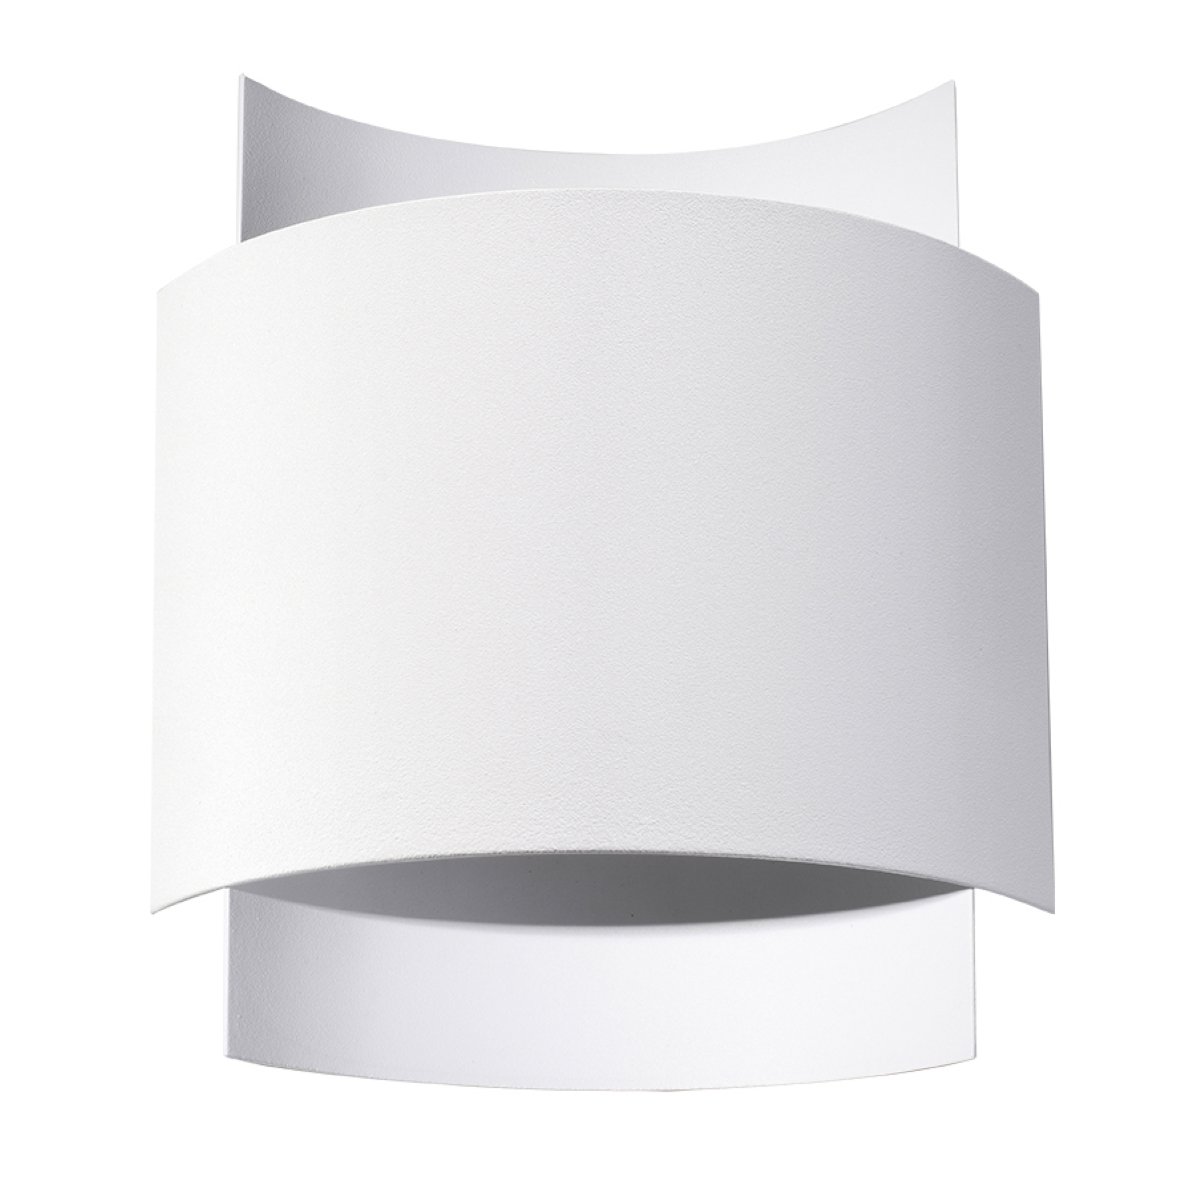 Sieninis šviestuvas SOLLUX IMPACT baltas, 40 W